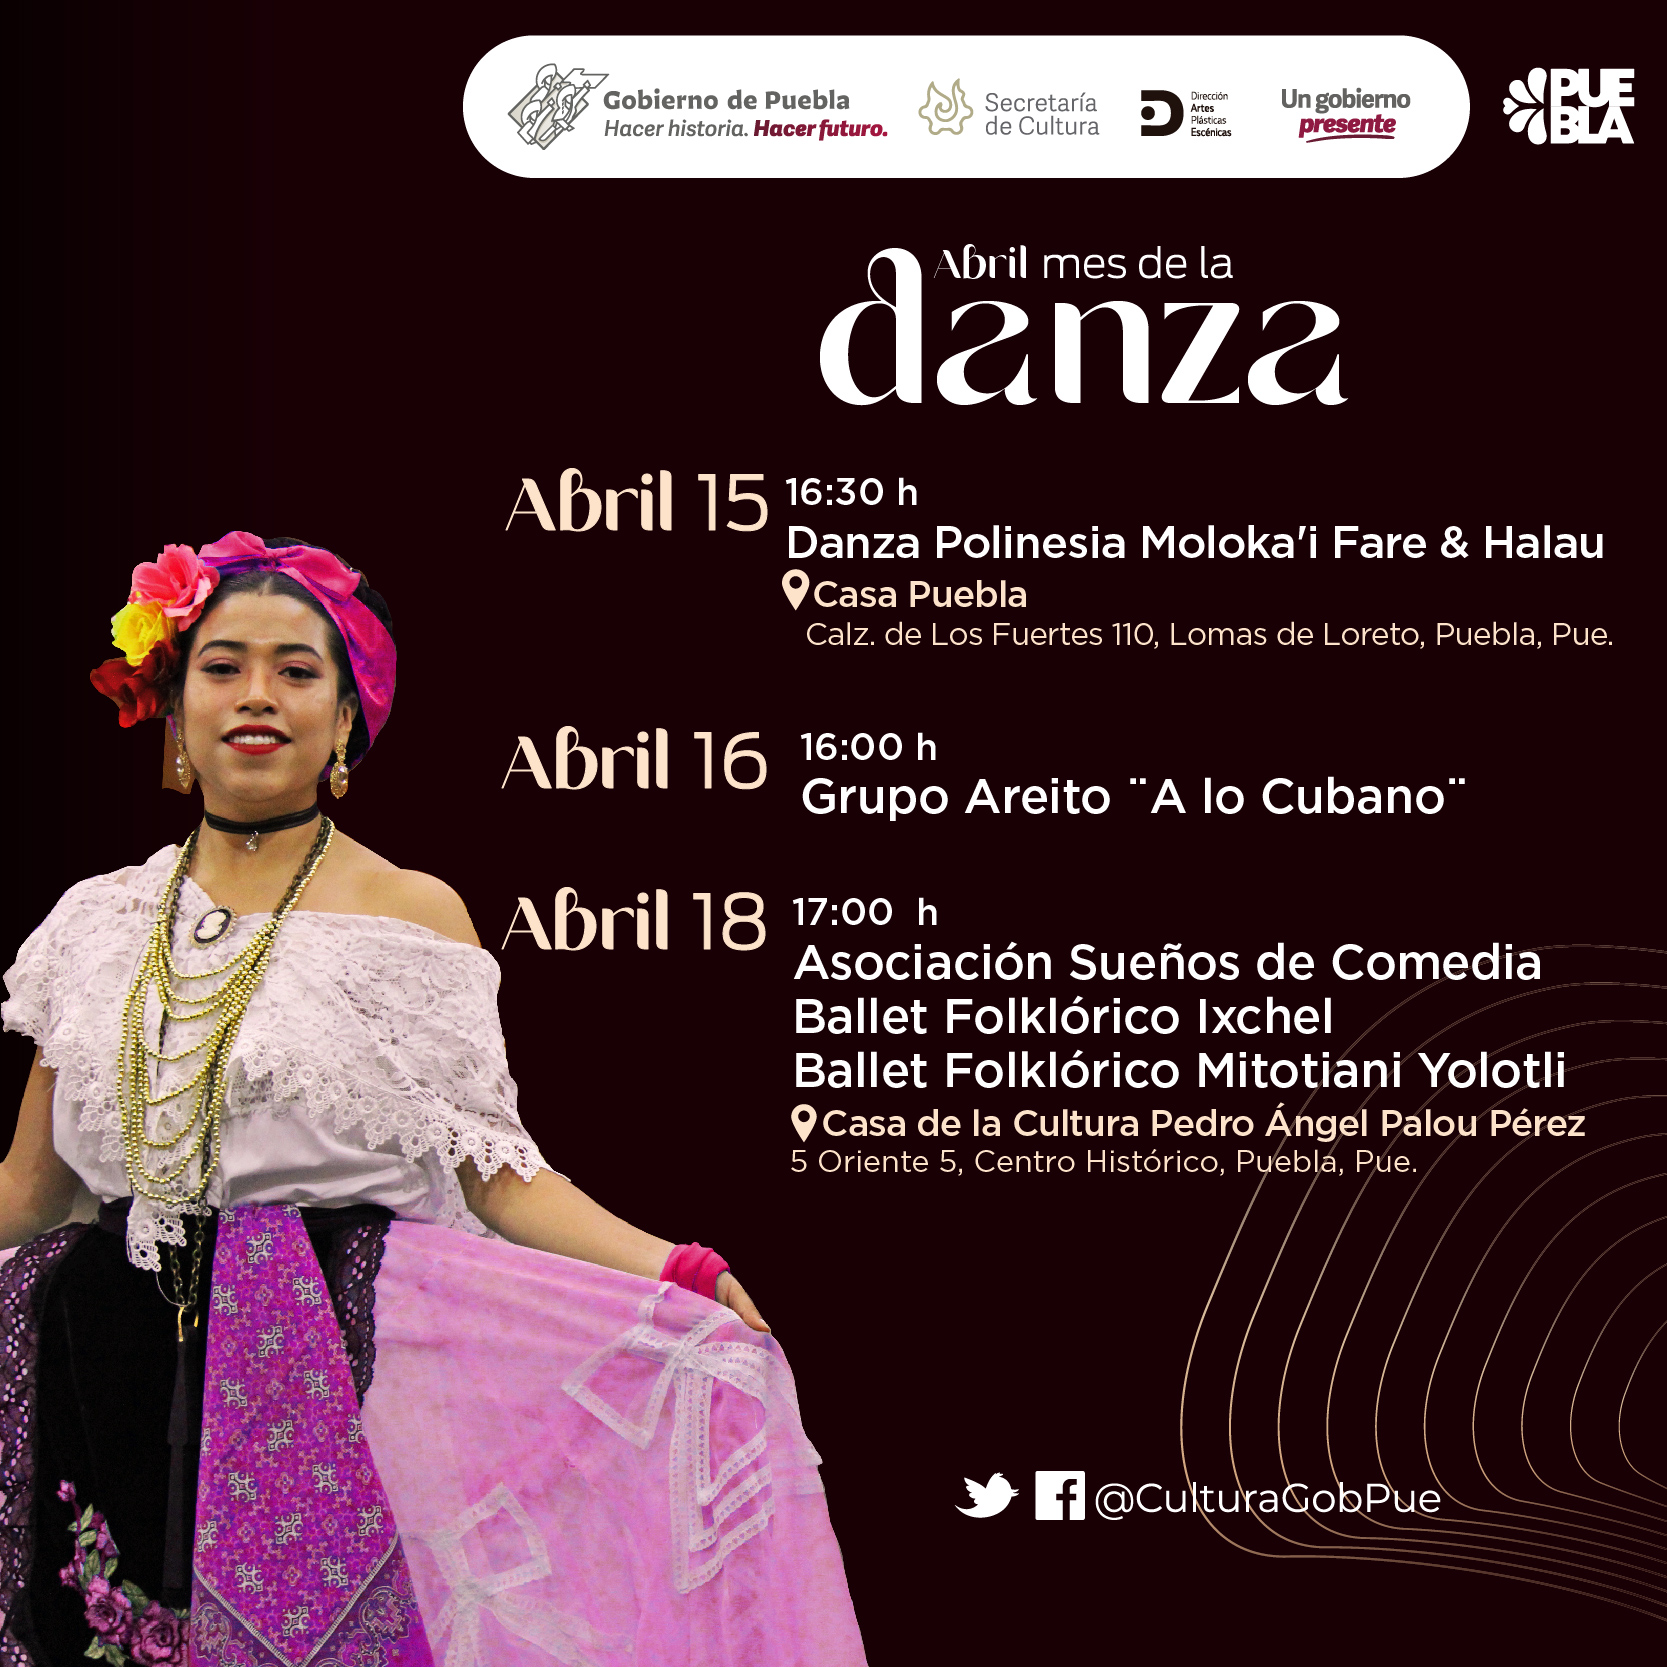 Durante abril, gobierno de Puebla realizará actividades por Día de la Danza